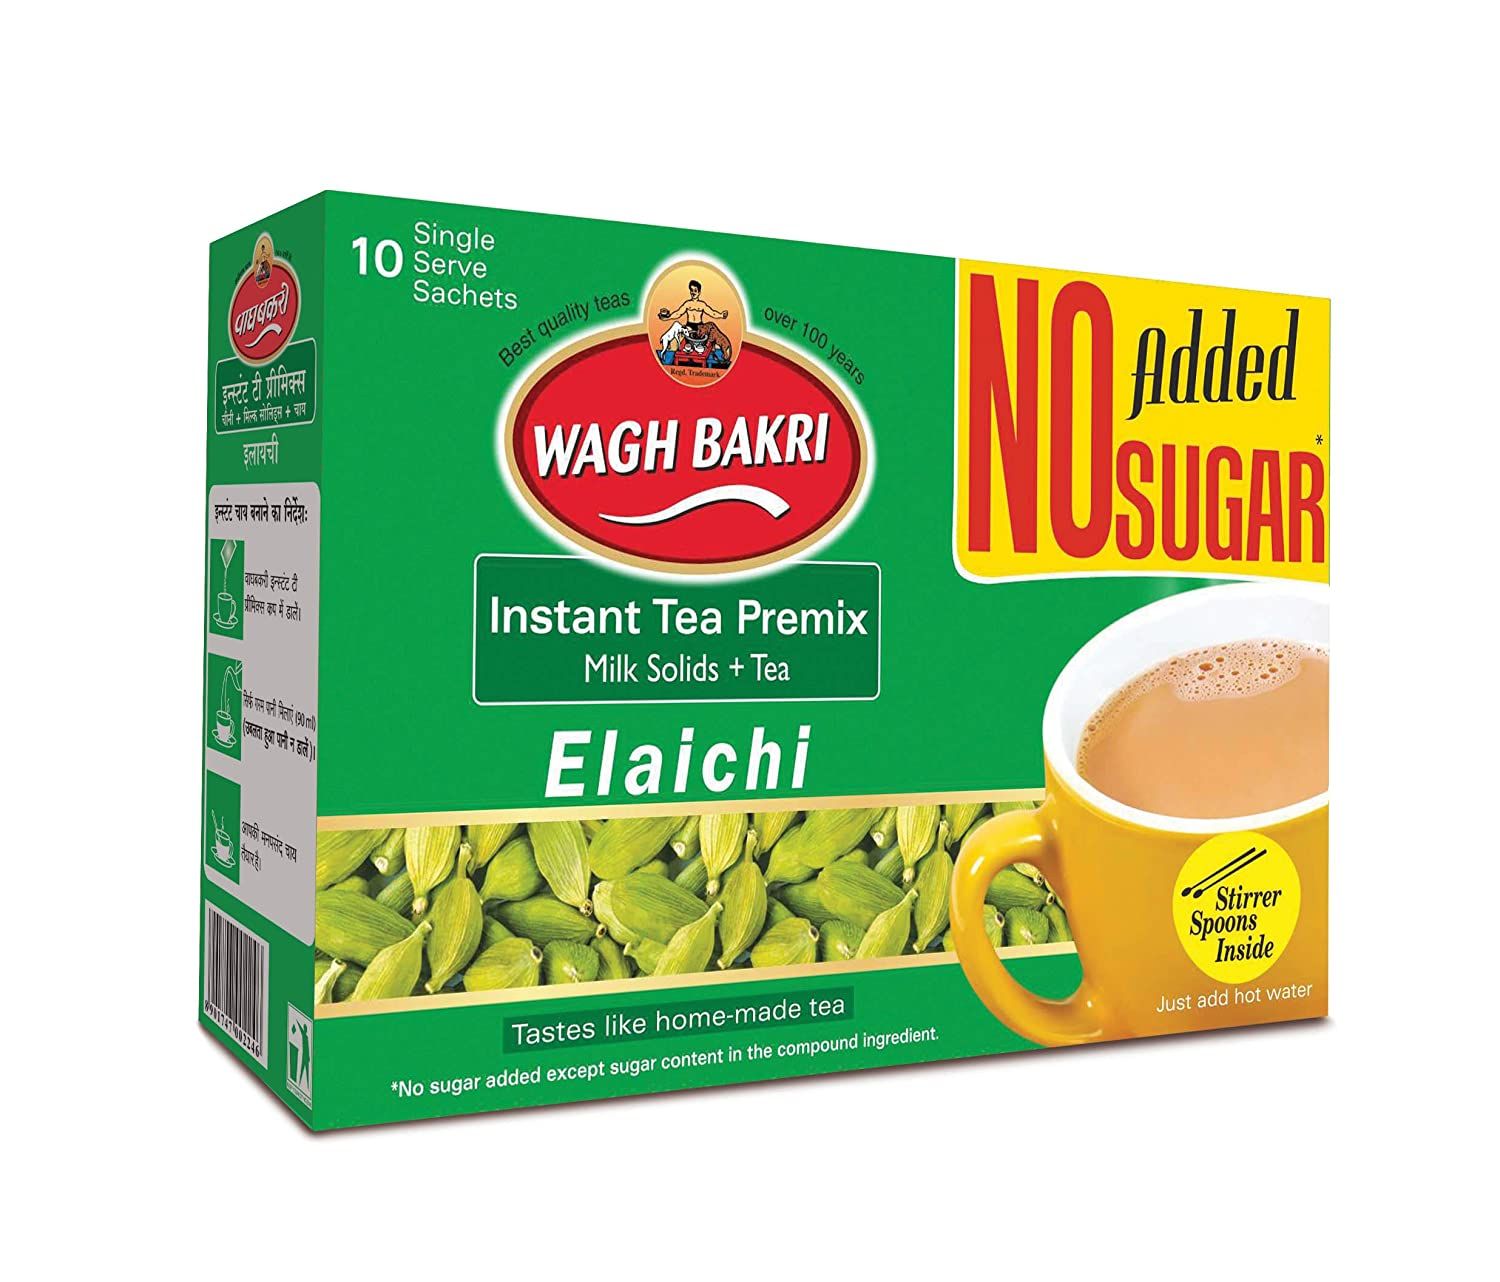 Wagh Bakri Instant Premix Elaichi No Added Sugar Image